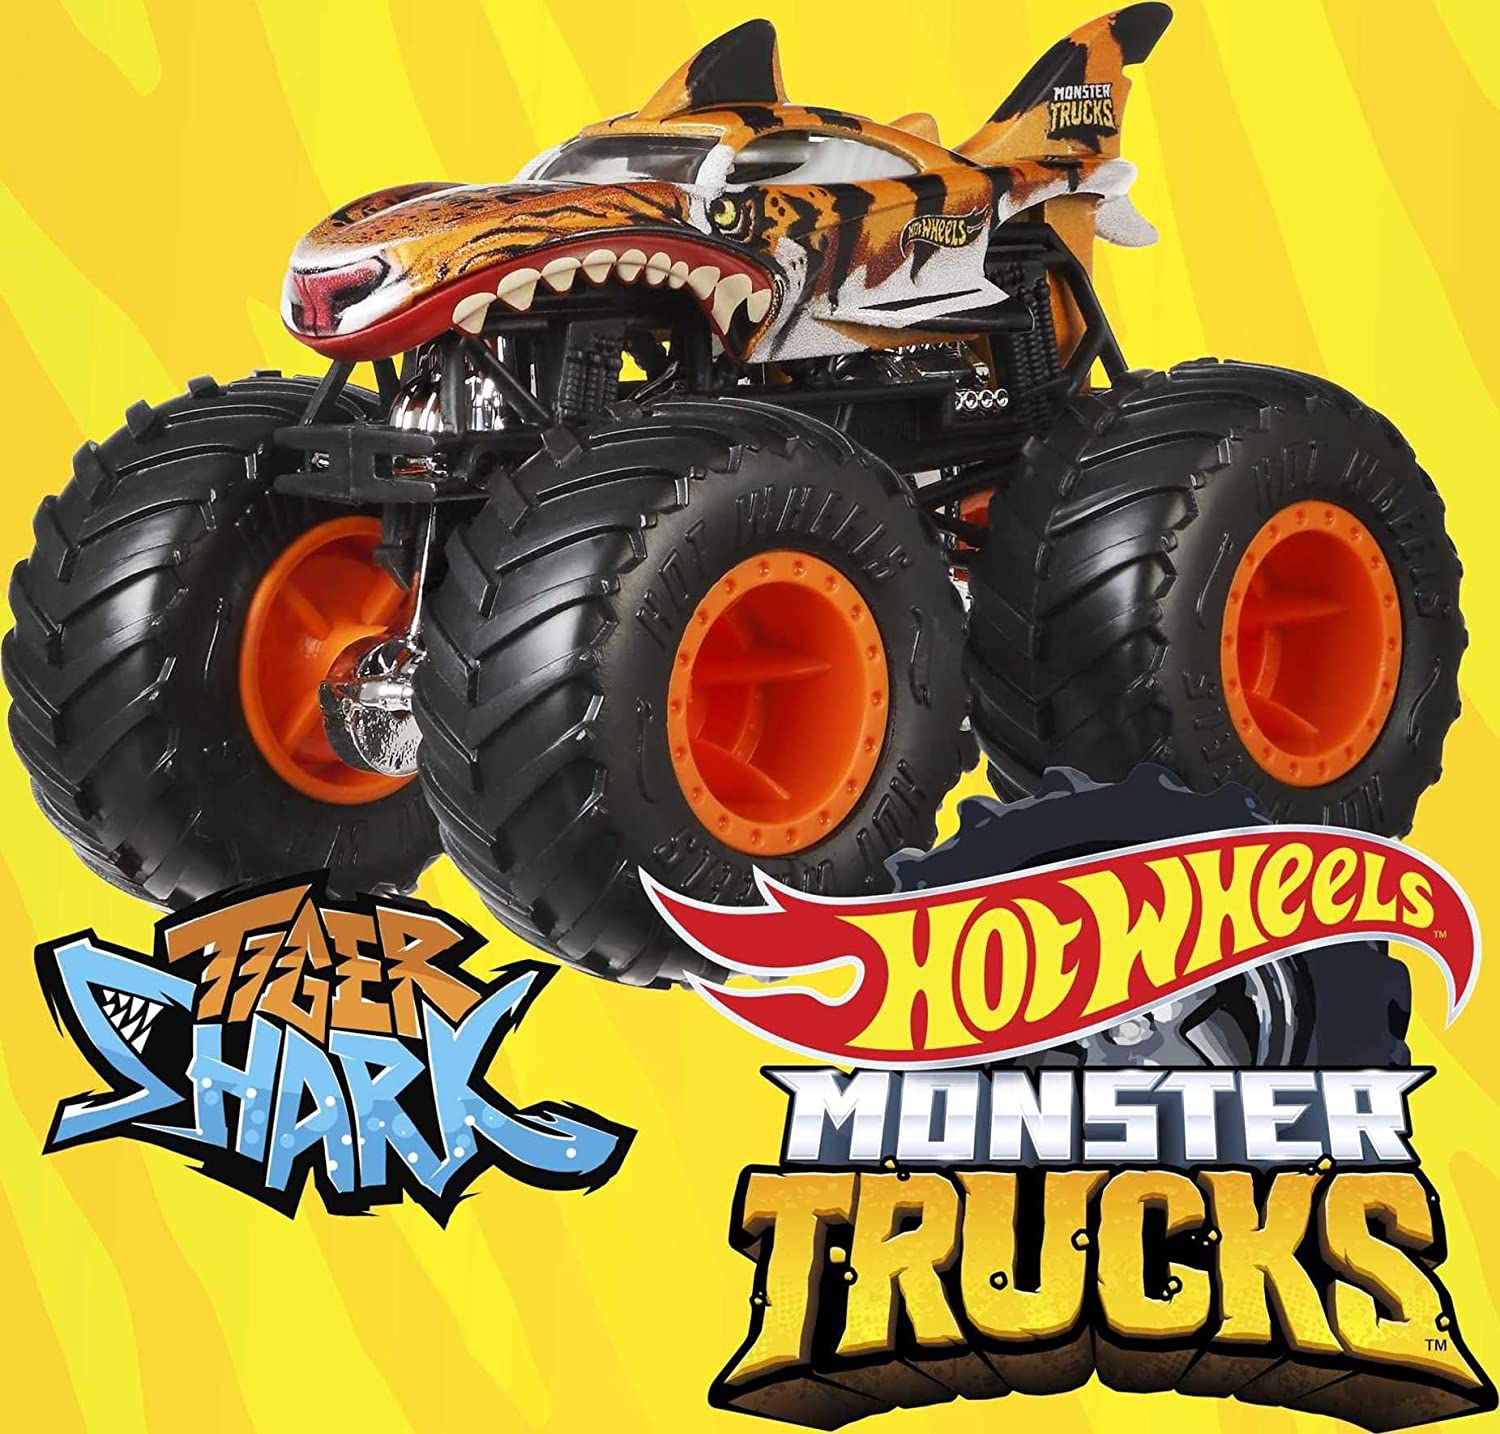 Carrinho Hot Wheels Monster Truck Original Caminhão Sortidos